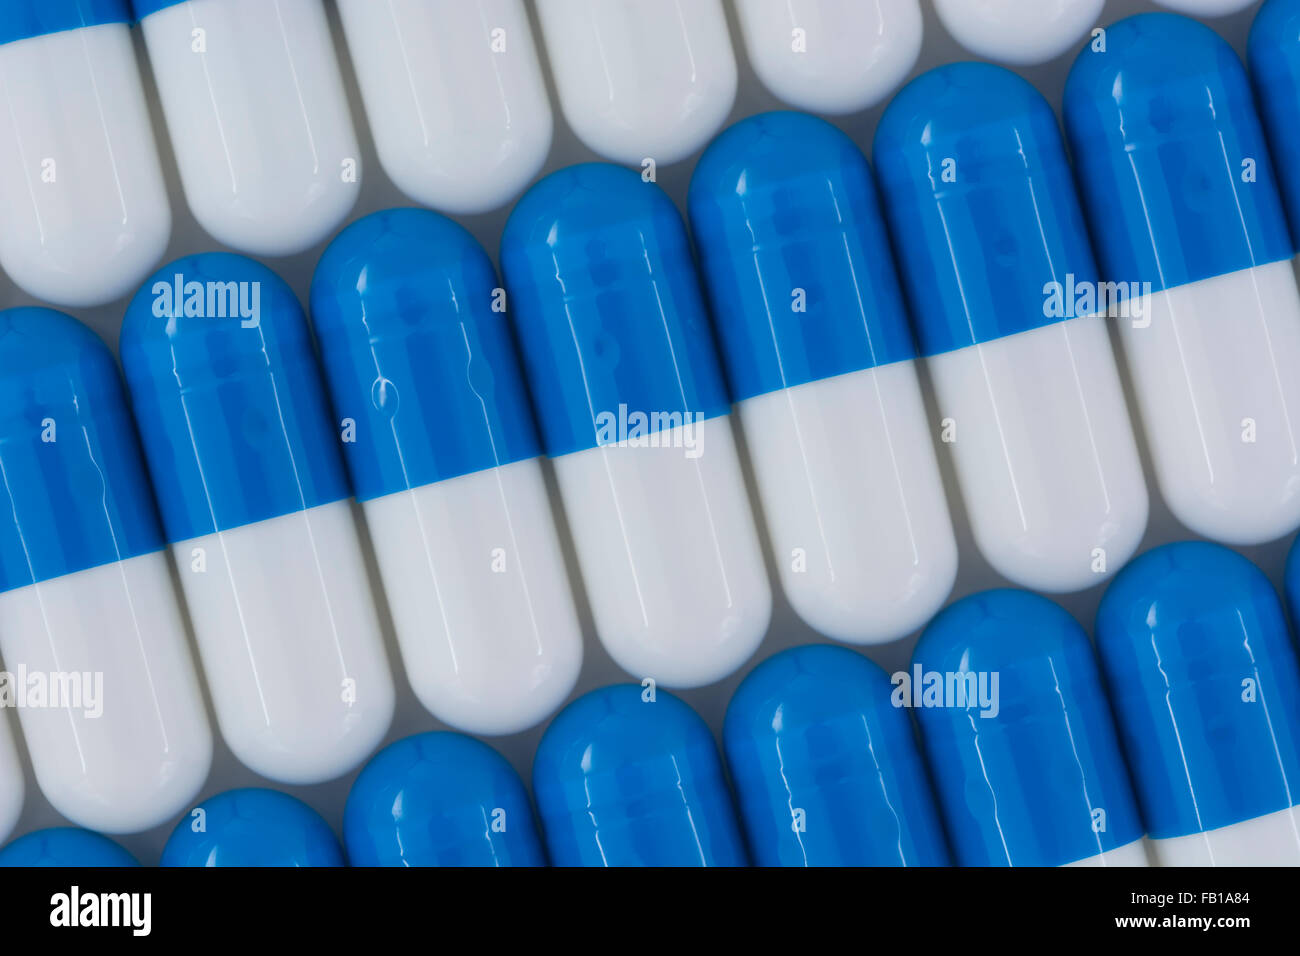 Primer plano de pastillas azules y blancas - forma de cápsula hecha de gelatina. Metáfora tomando a las compañías farmacéuticas estadounidenses sobre los altos precios de los medicamentos, ensayos de drogas. Foto de stock